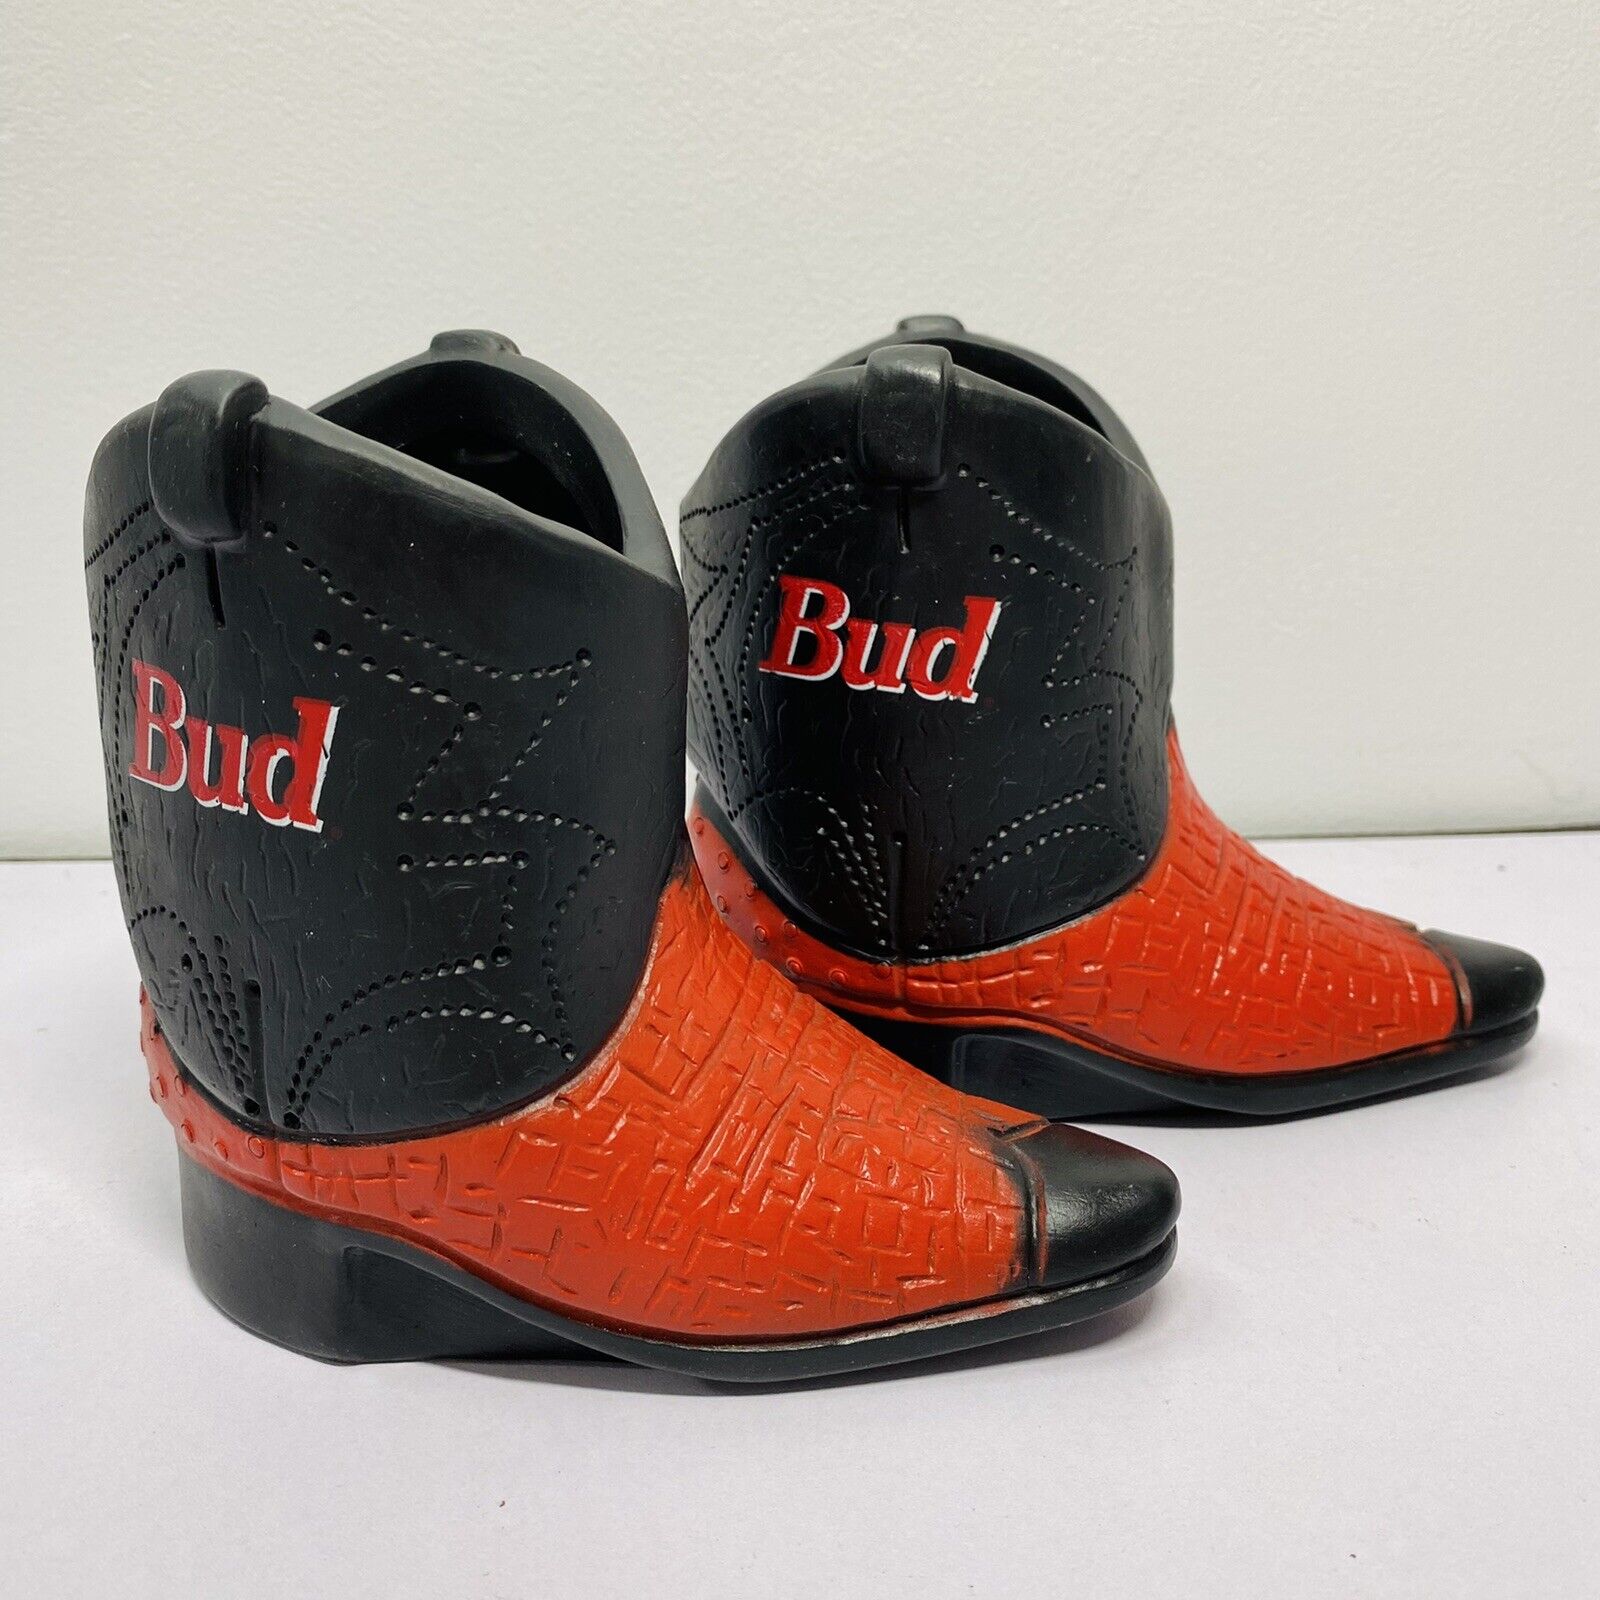 1991 Bud Kool Buddies Drink Holders Budweiser Pair of Cowboy Boots (2)